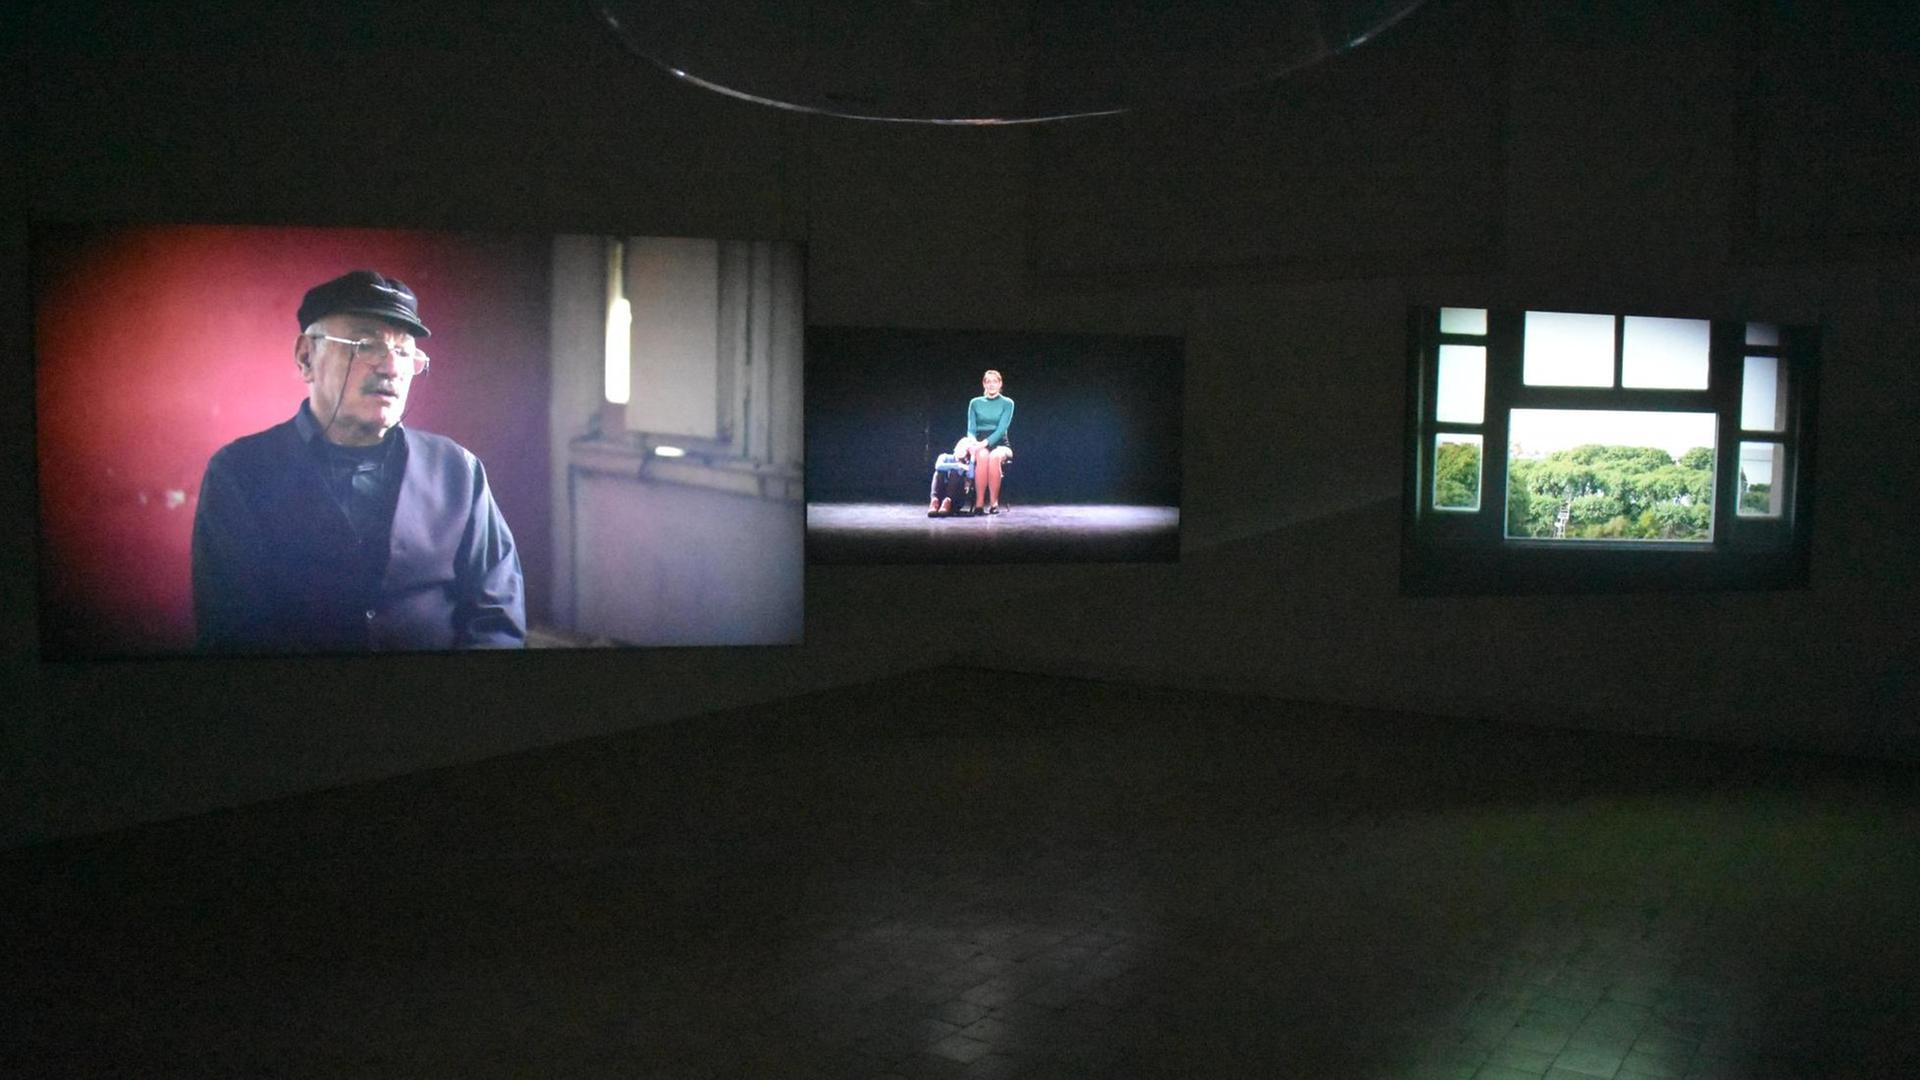 Video-Installation der arg. Künstlerin Gabriela Golder über Menschen und ihre Migrationsgeschichten - gezeigt in Buenos Aires im Rahmen von BIENALSUR